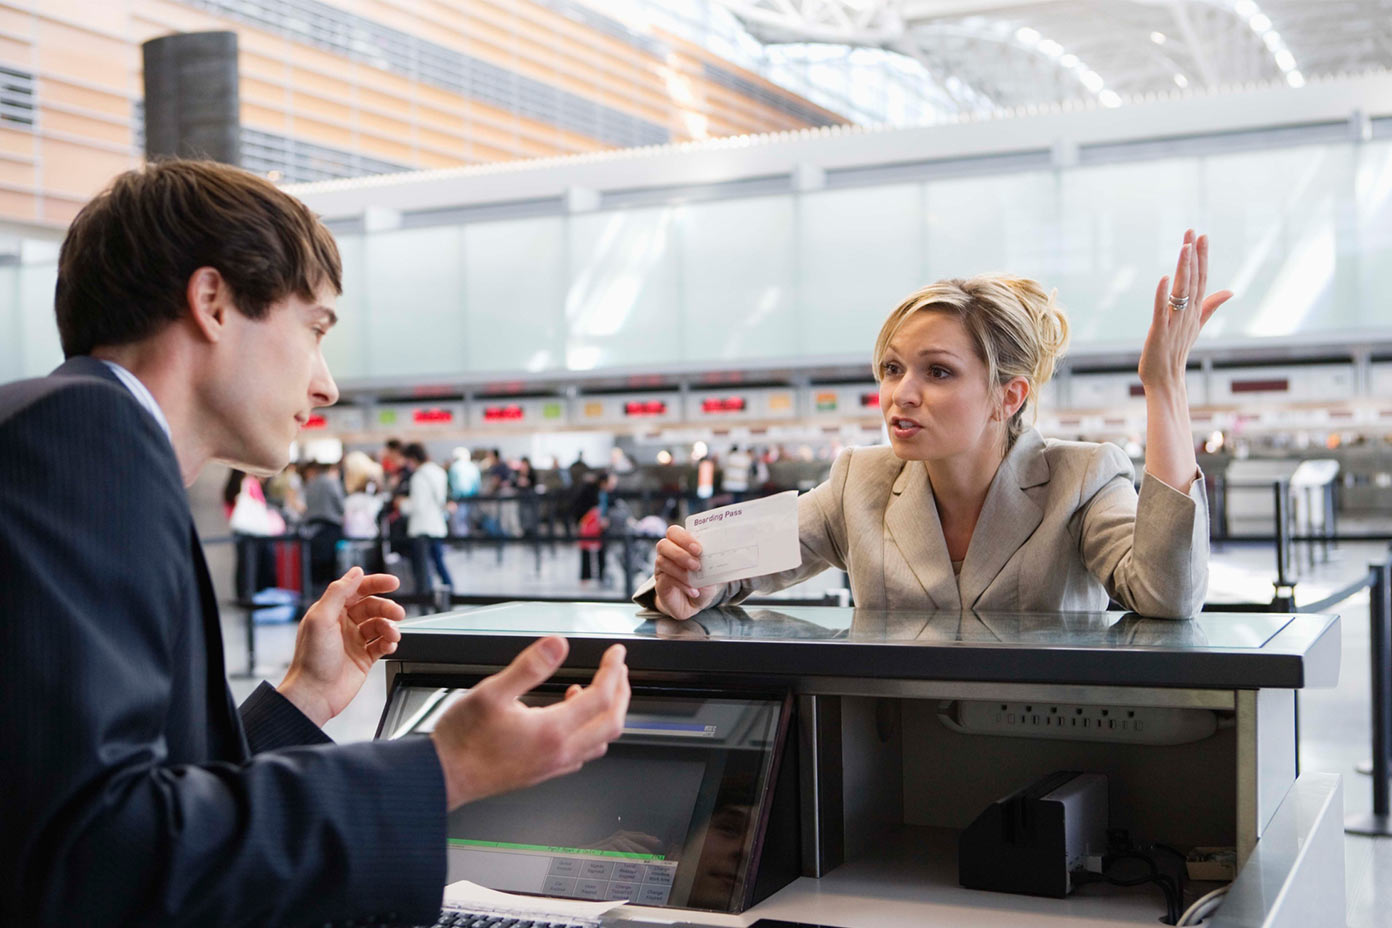 بعد از گم شدن چمدان در فرودگاه چه باید کرد؟